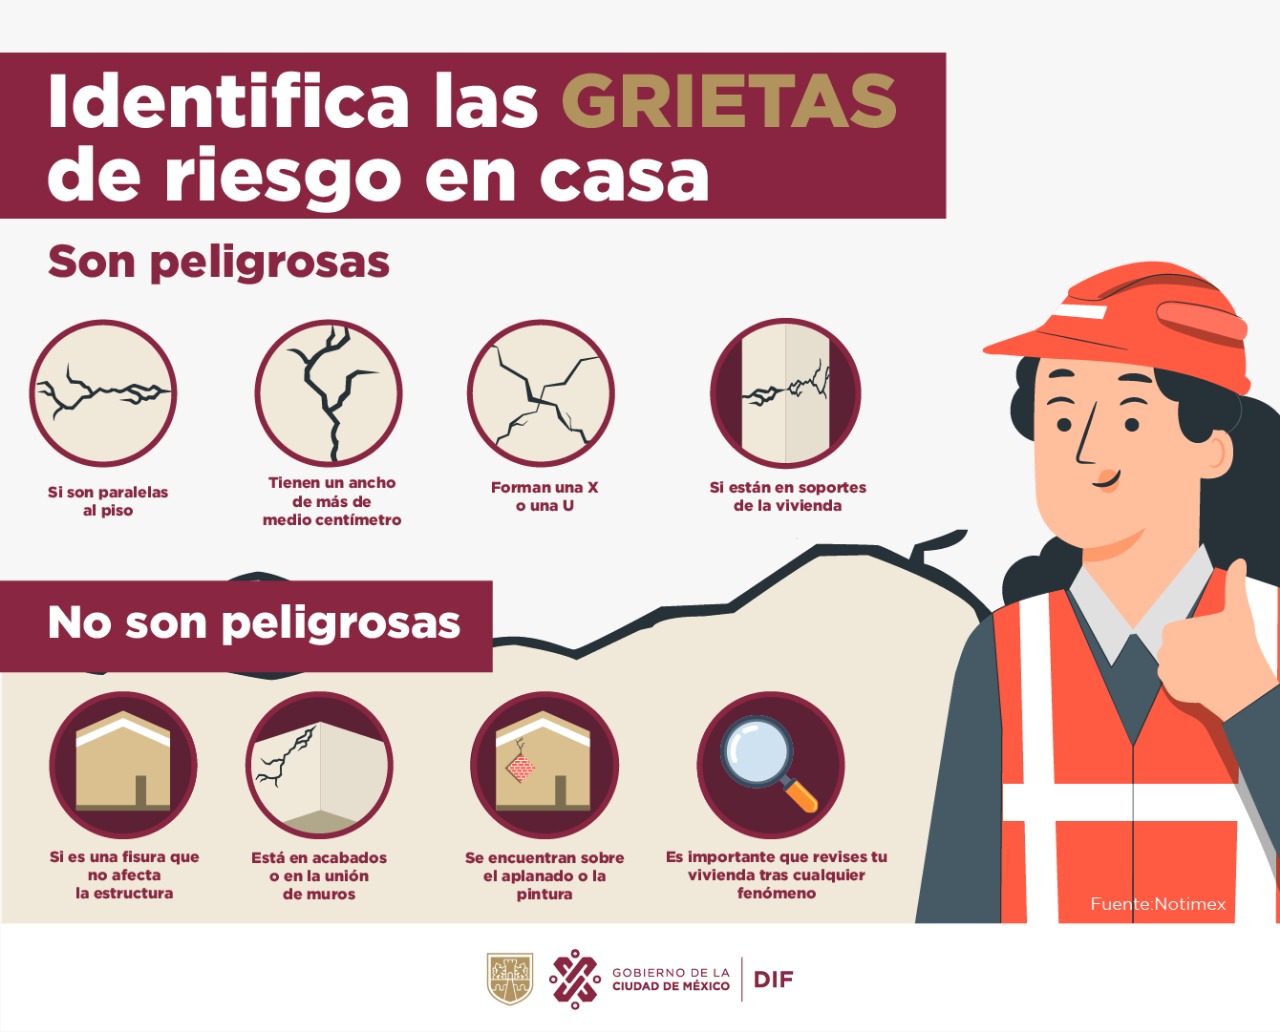 Consejos para identificar grietas de riesgo en casa. (Imagen: Facebook/DIF Ciudad de México)